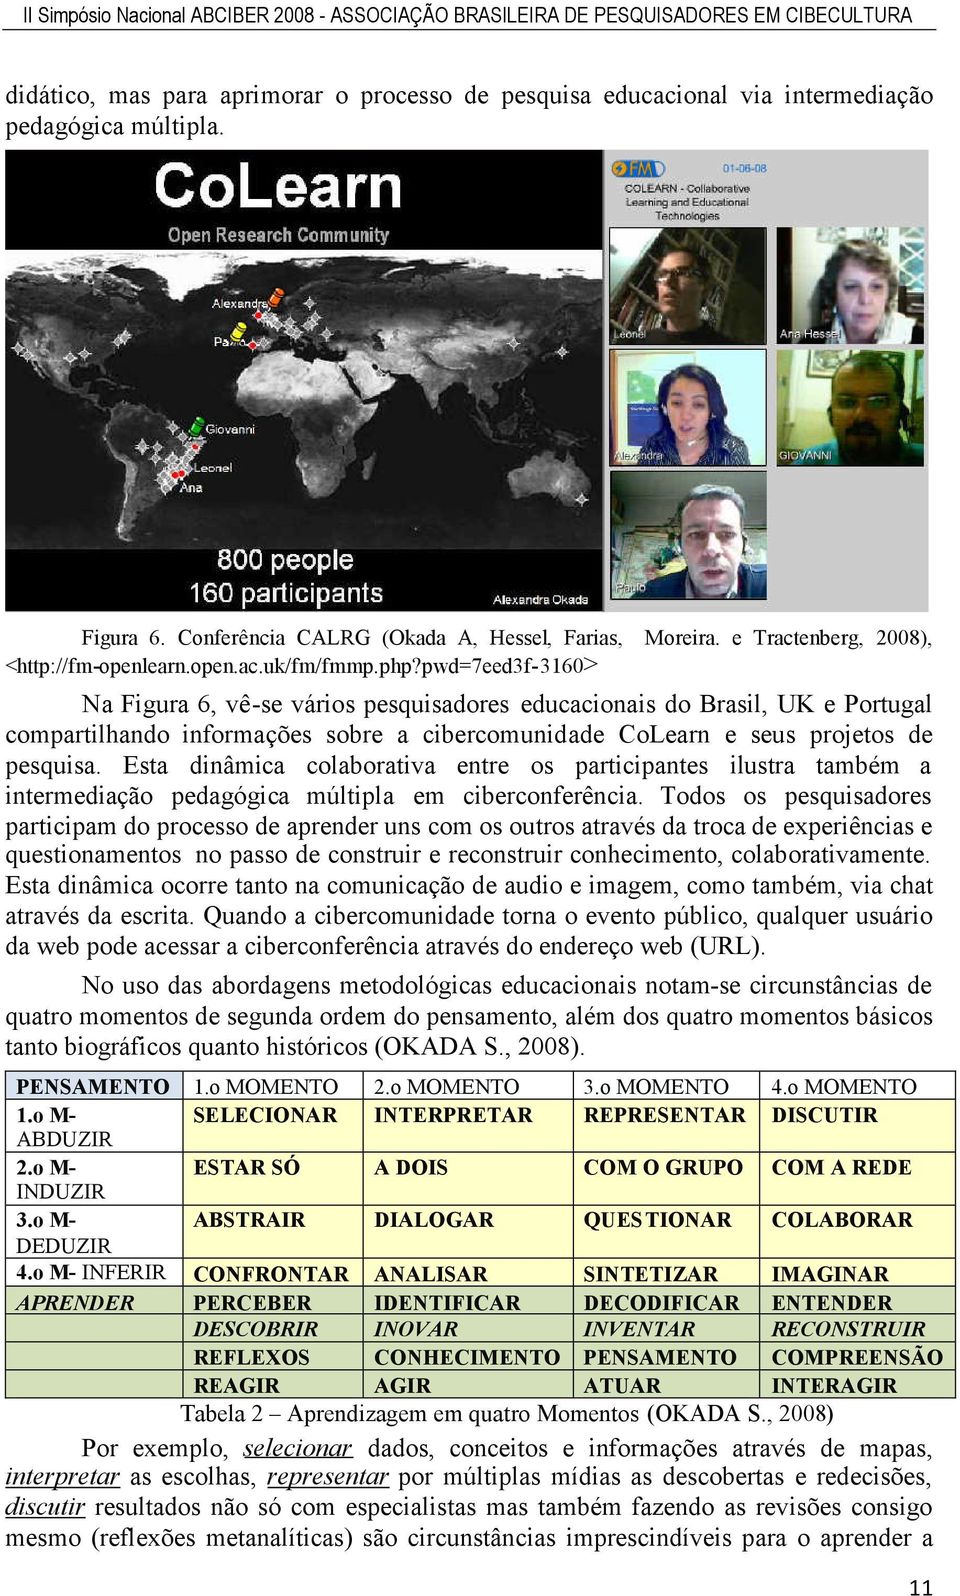 pwd=7eed3f-3160> Na Figura 6, vê-se vários pesquisadores educacionais do Brasil, UK e Portugal compartilhando informações sobre a cibercomunidade CoLearn e seus projetos de pesquisa.